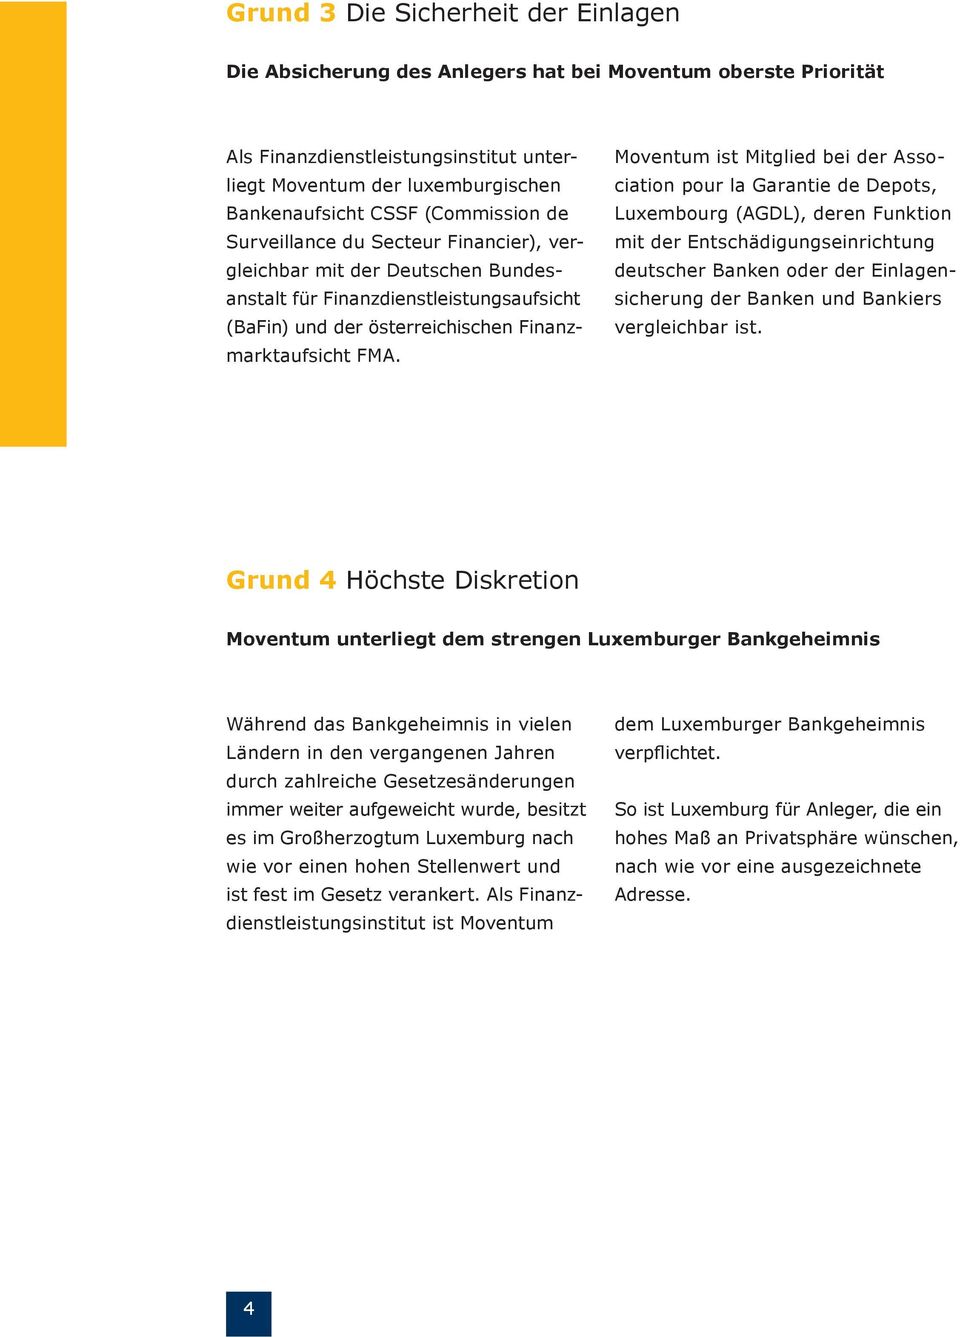 Moventum ist Mitglied bei der Association pour la Garantie de Depots, Luxembourg (AGDL), deren Funktion mit der Entschädigungseinrichtung deutscher Banken oder der Einlagensicherung der Banken und